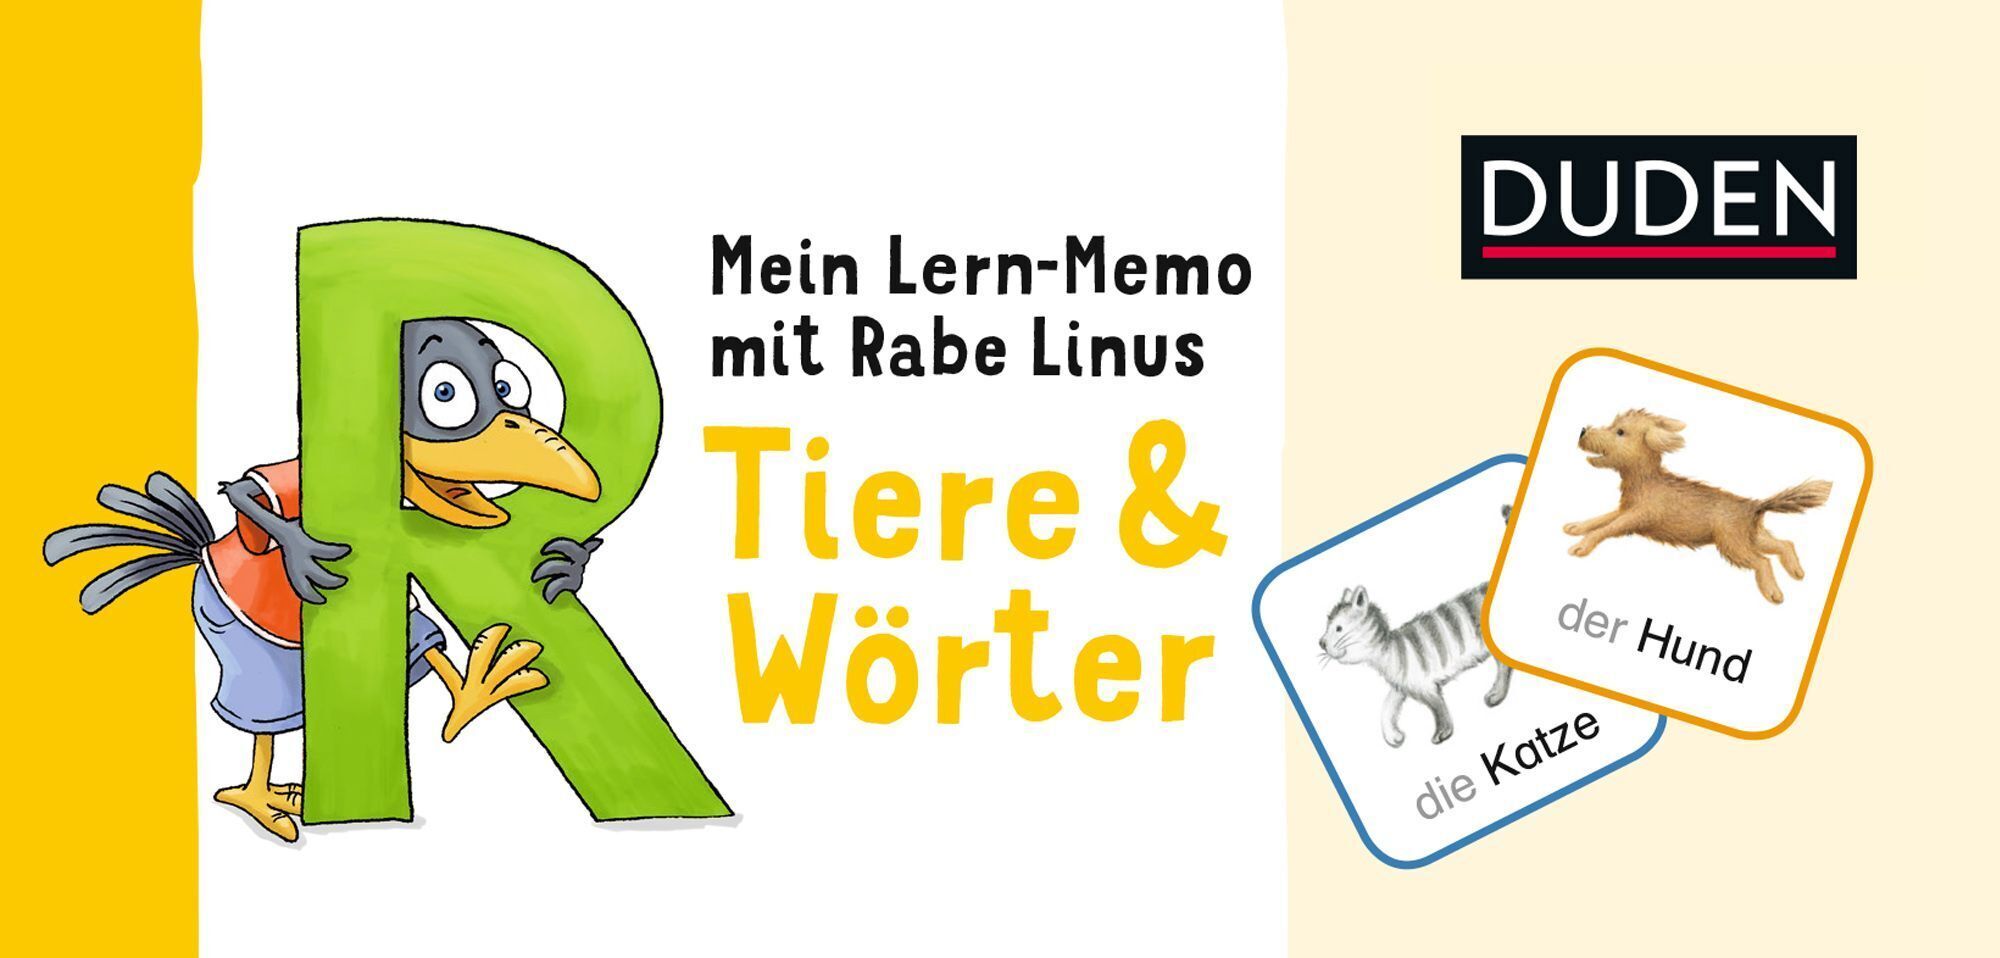 Duden: Mein Lern-Memo mit Rabe Linus - Tiere & Wörter